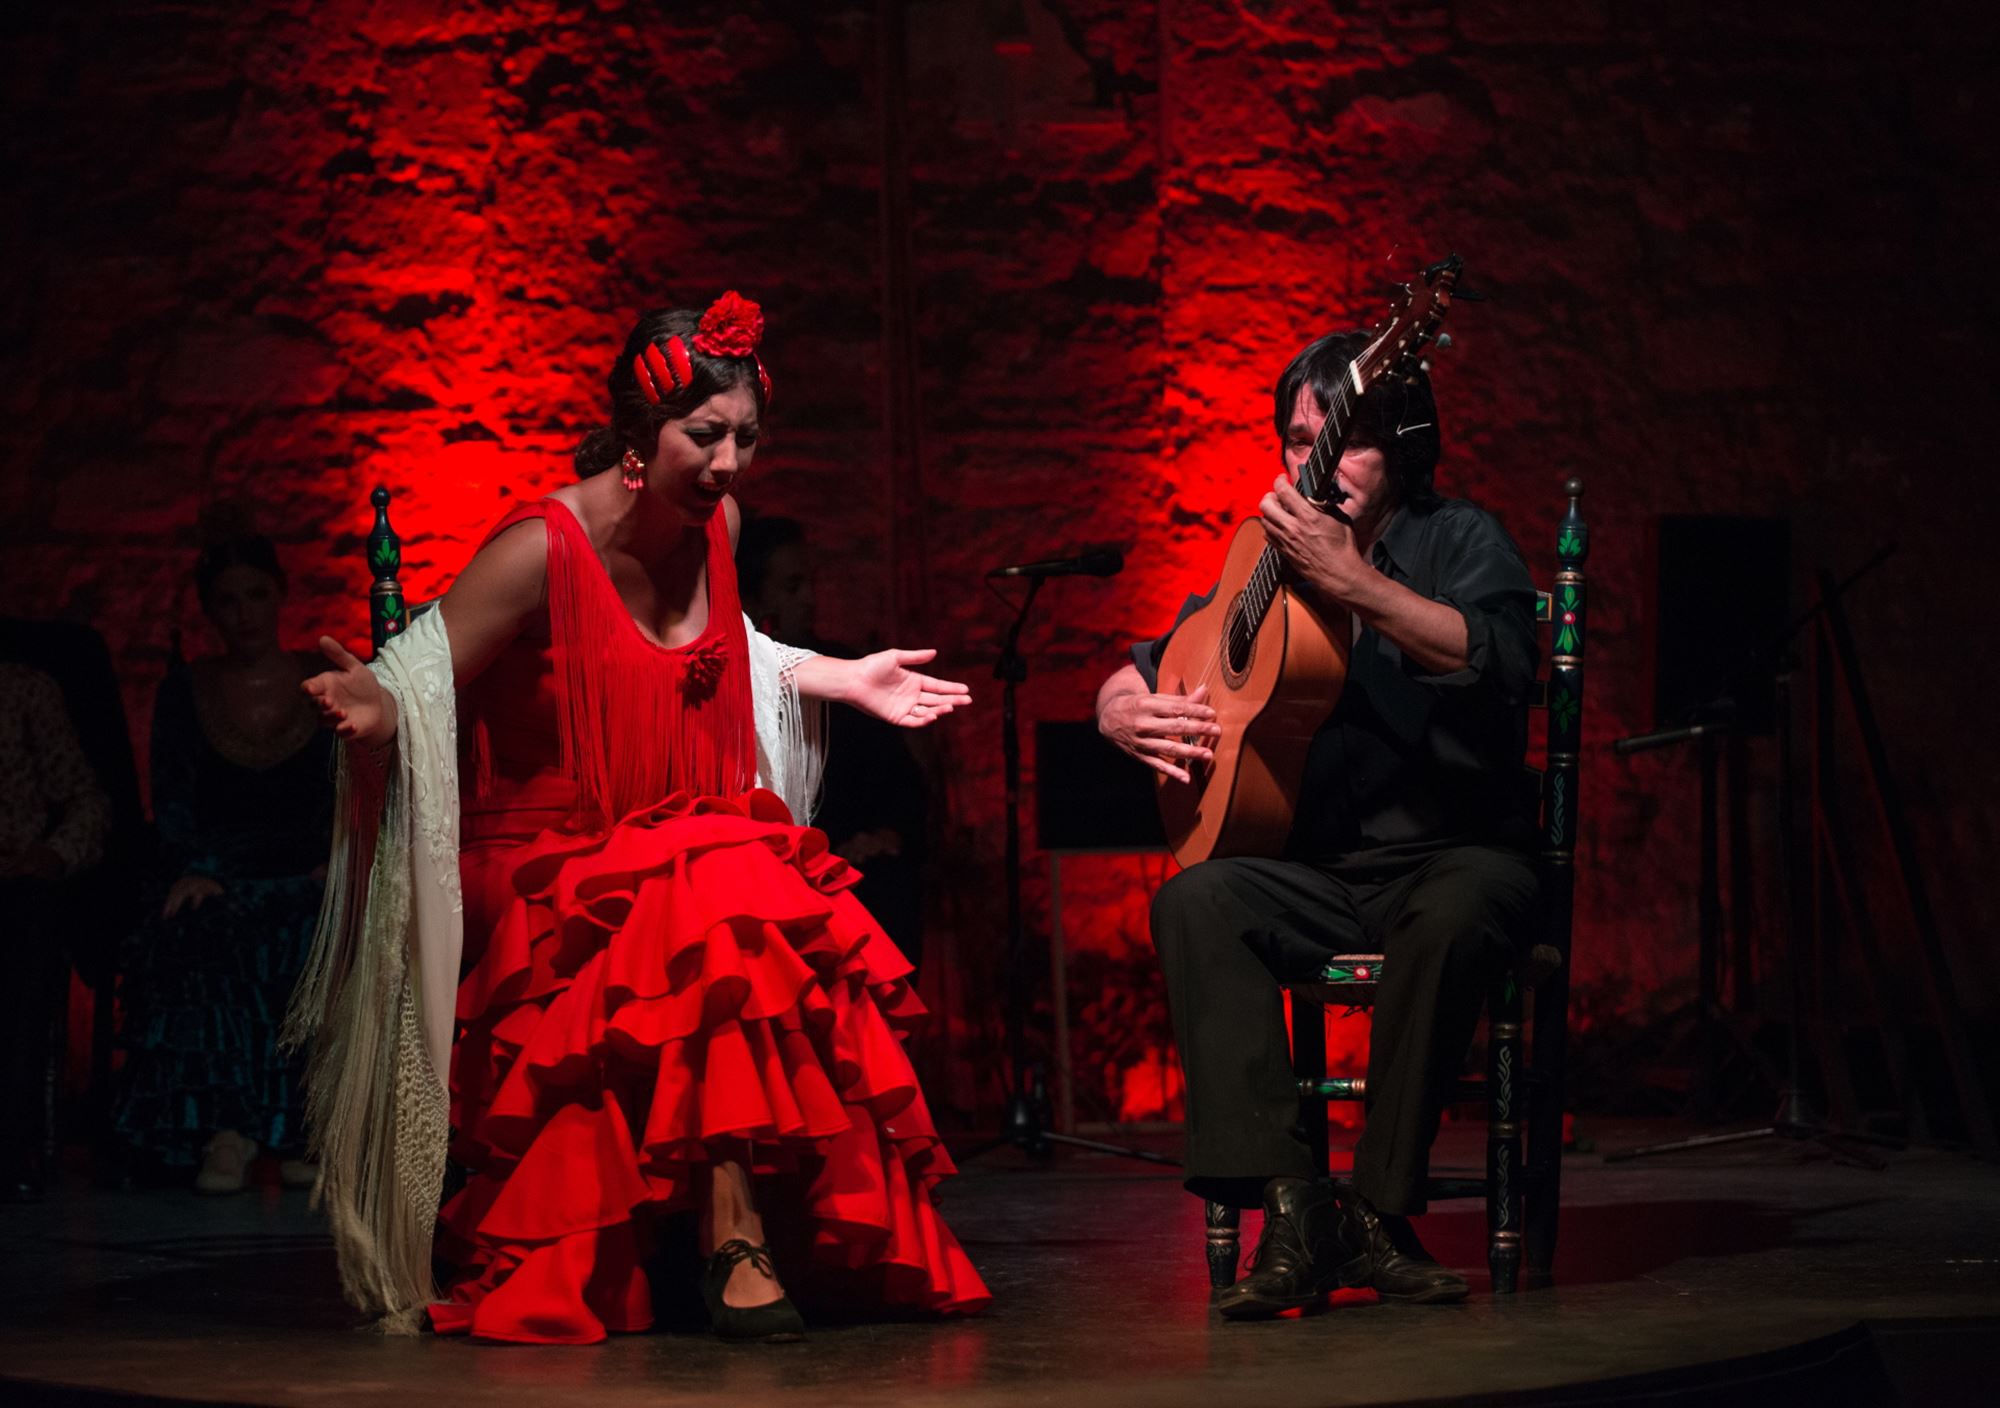 show Espectáculo Flamenco en el Tablao Puro Arte de Jerez de la Frontera cadiz